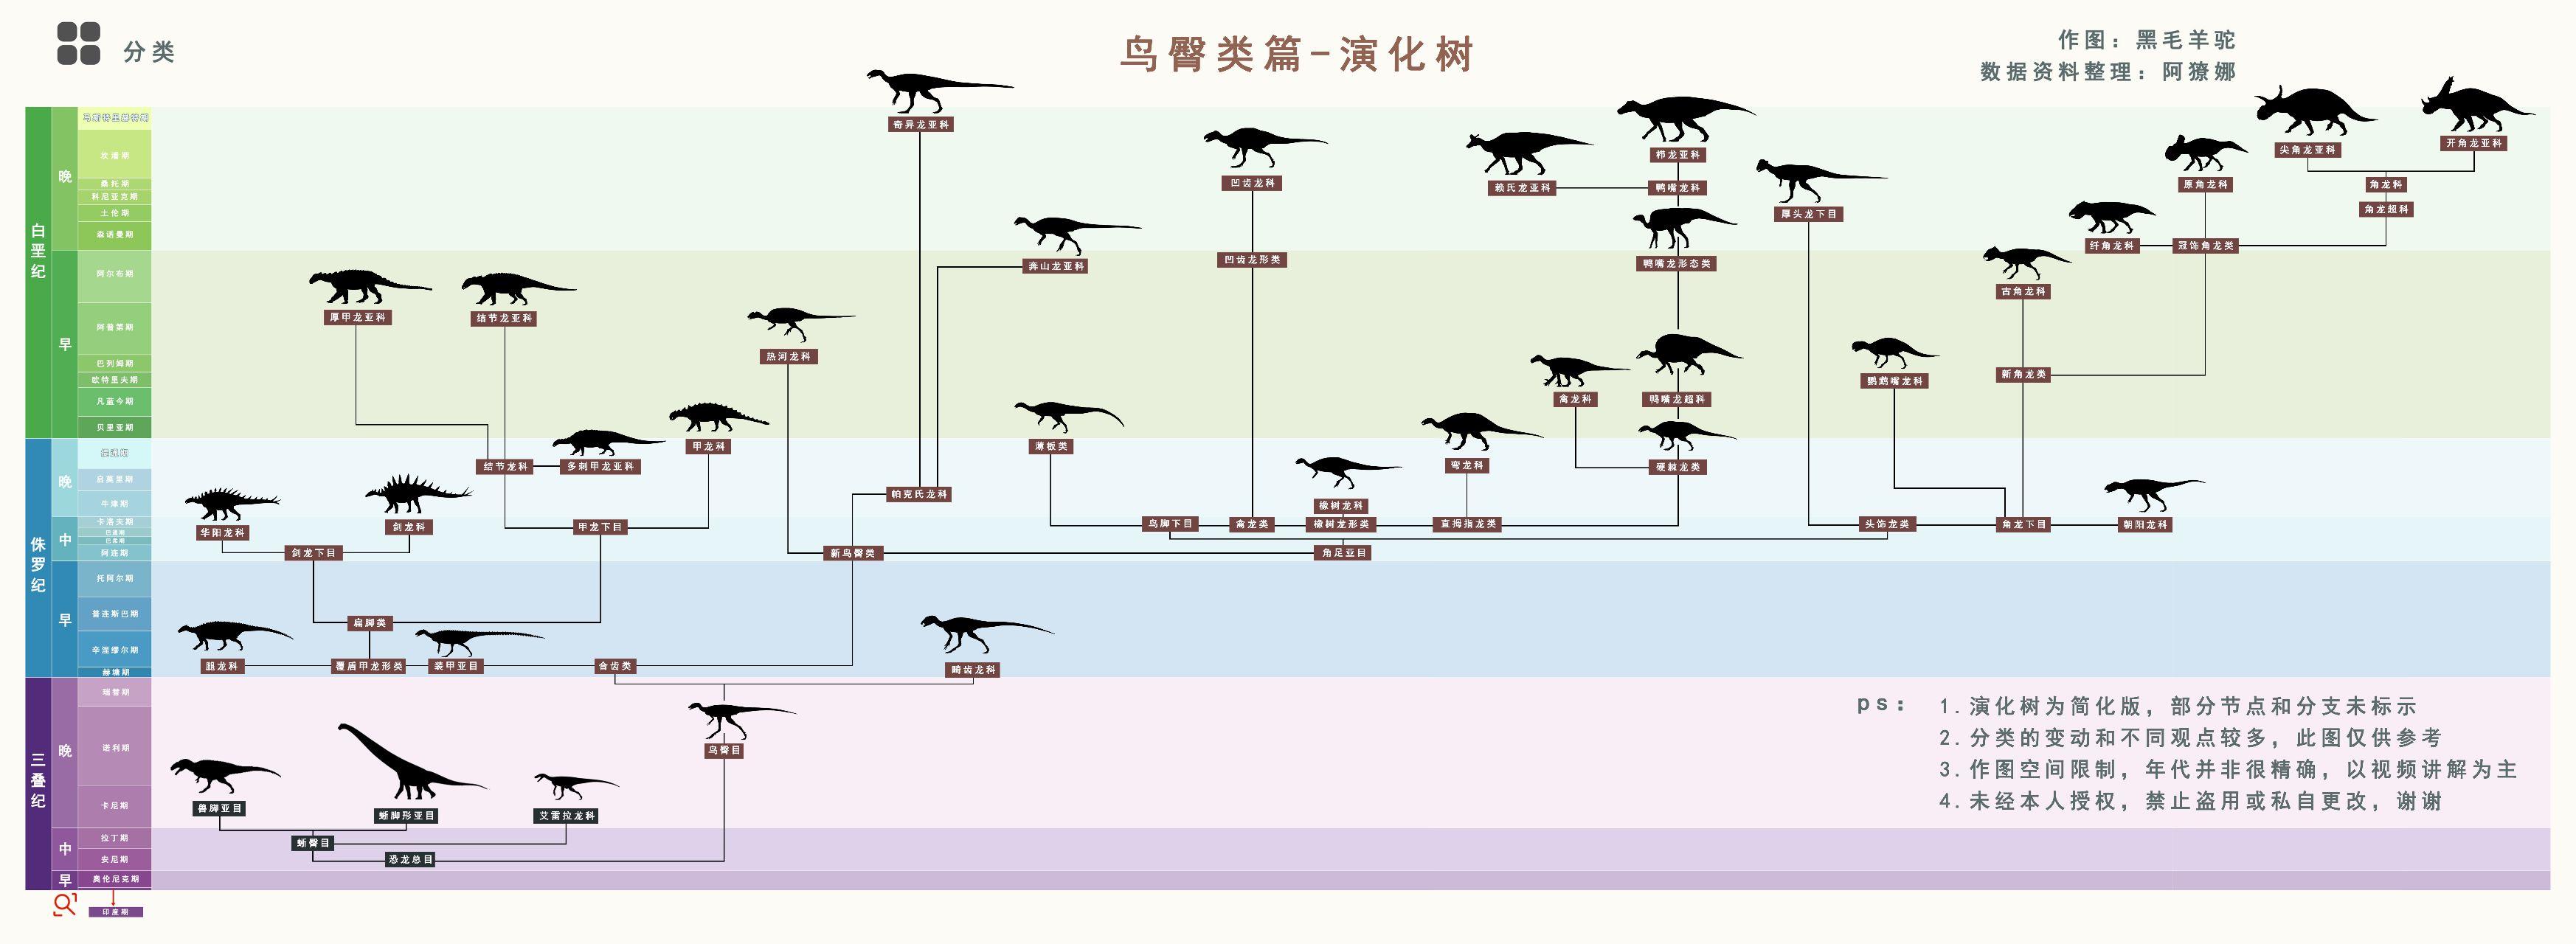 恐龙的演化过程导图图片